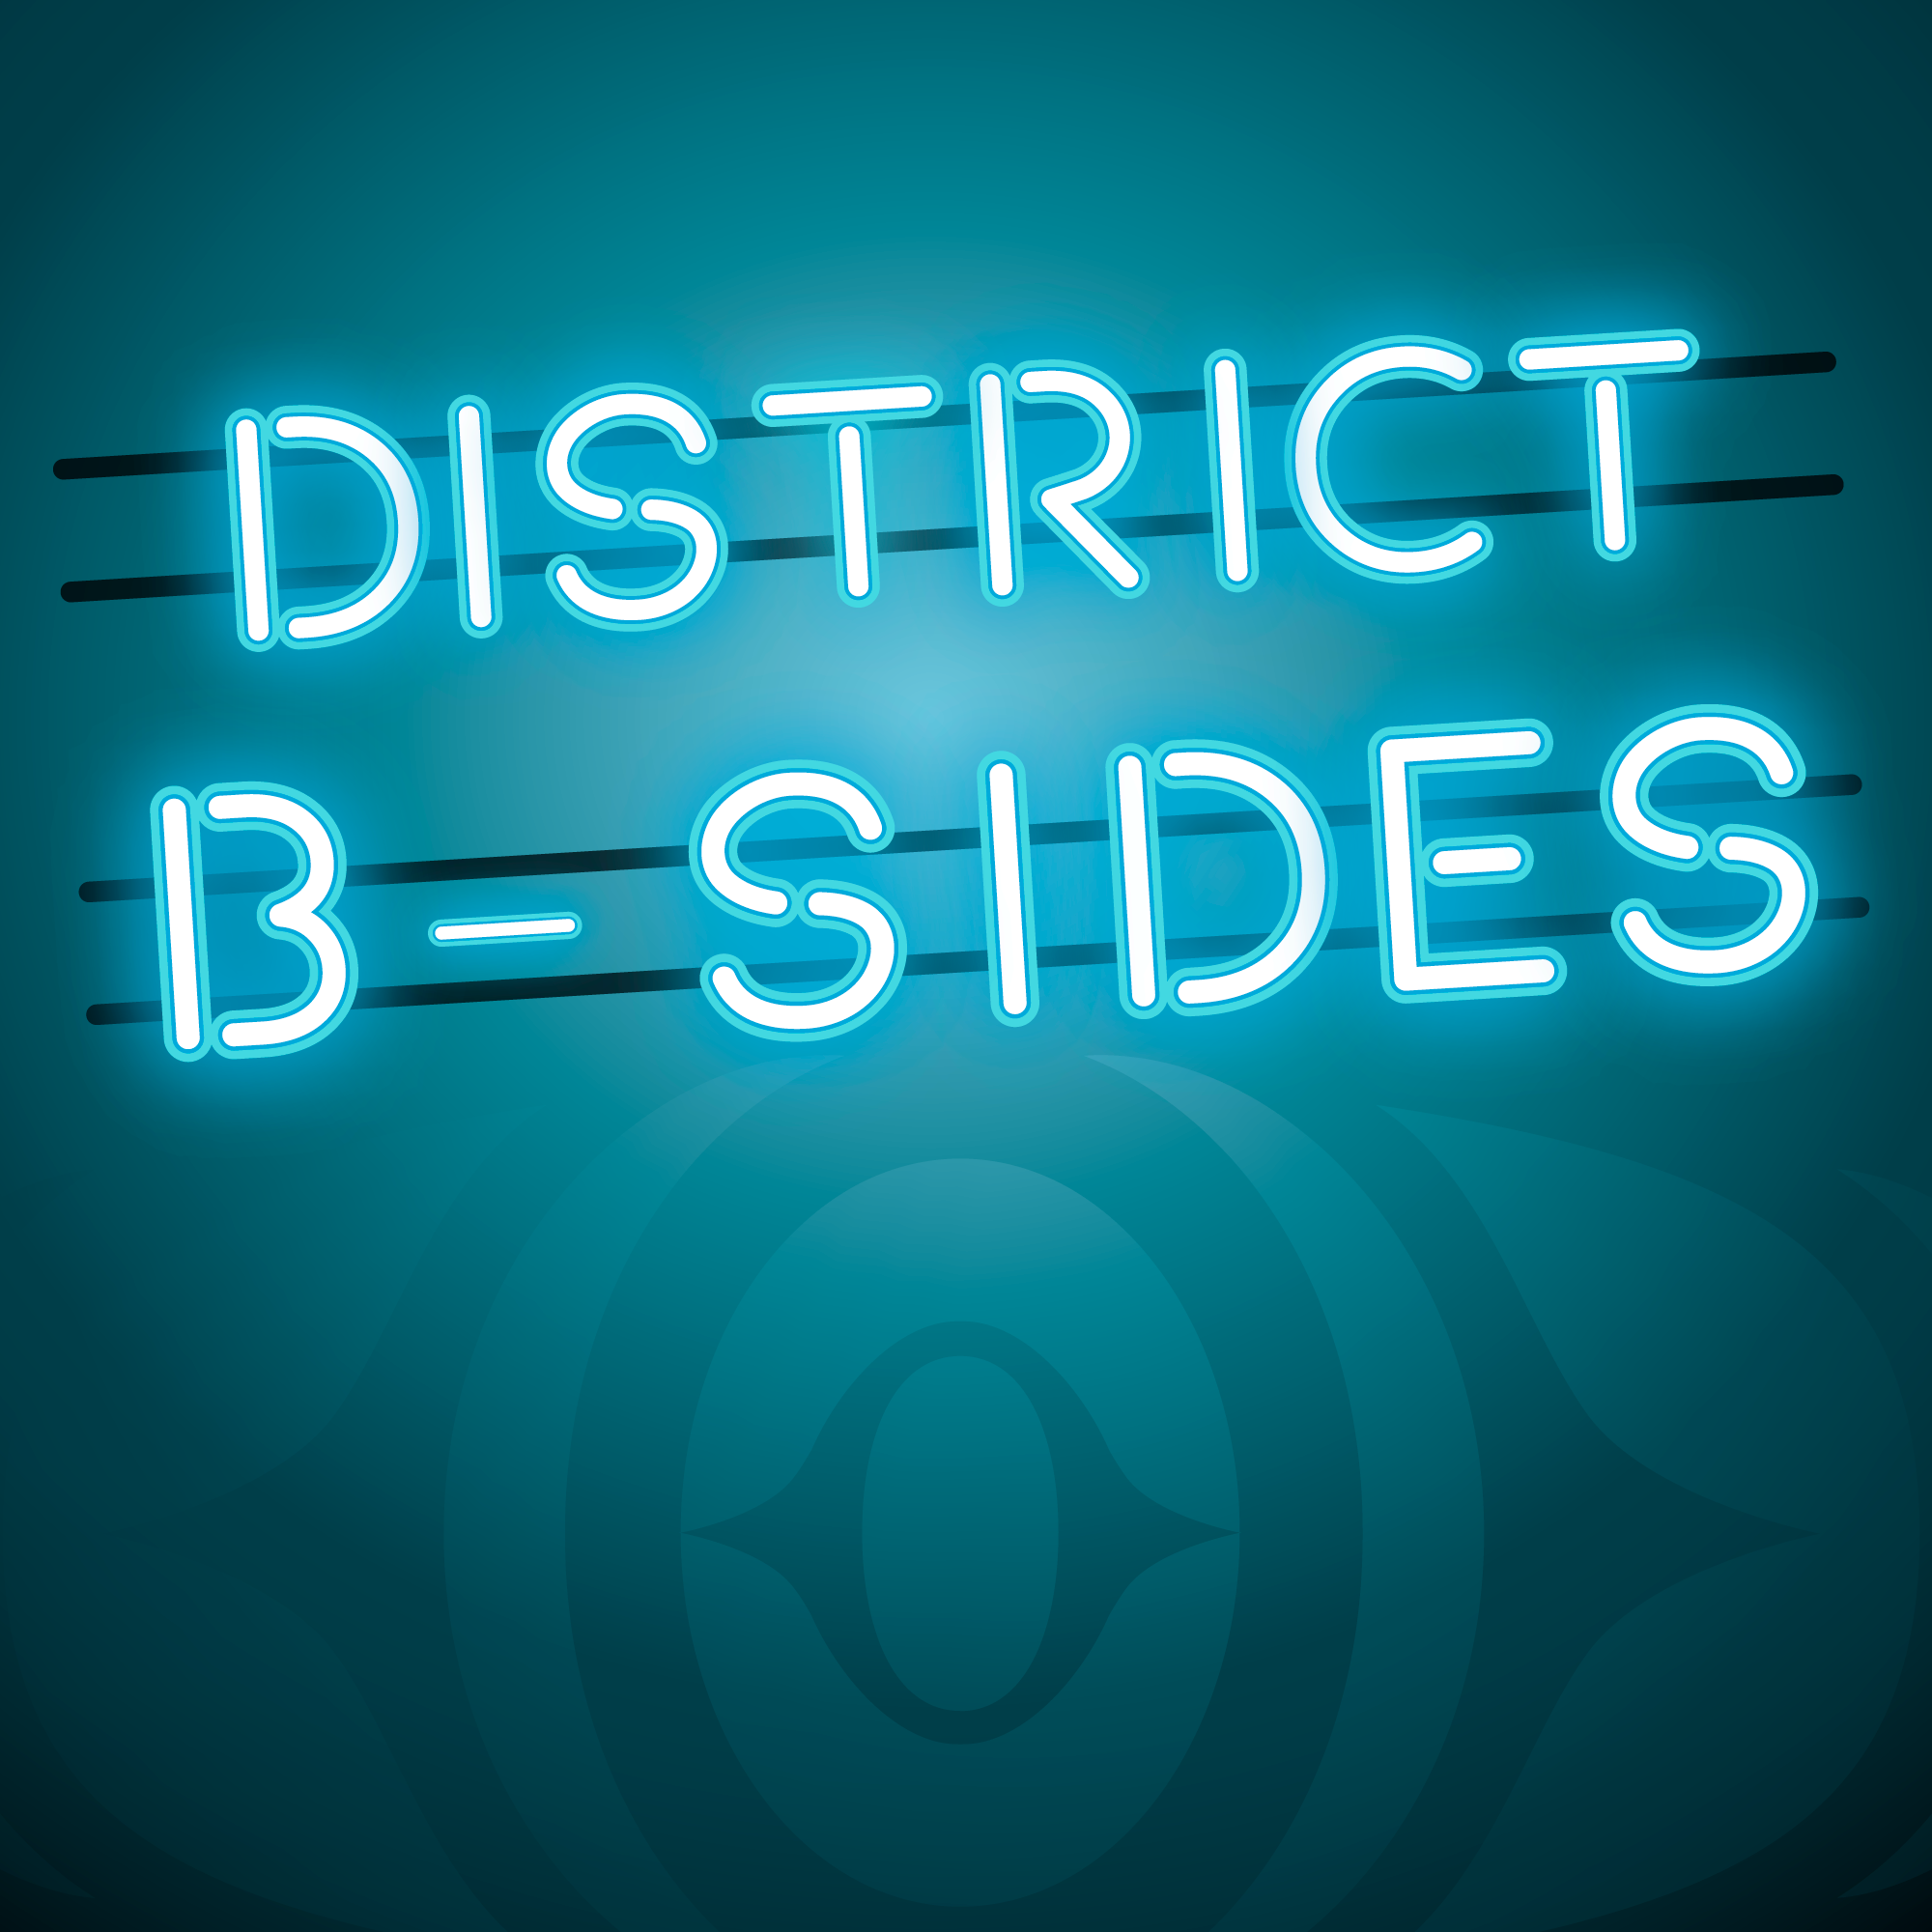 District B-Sides